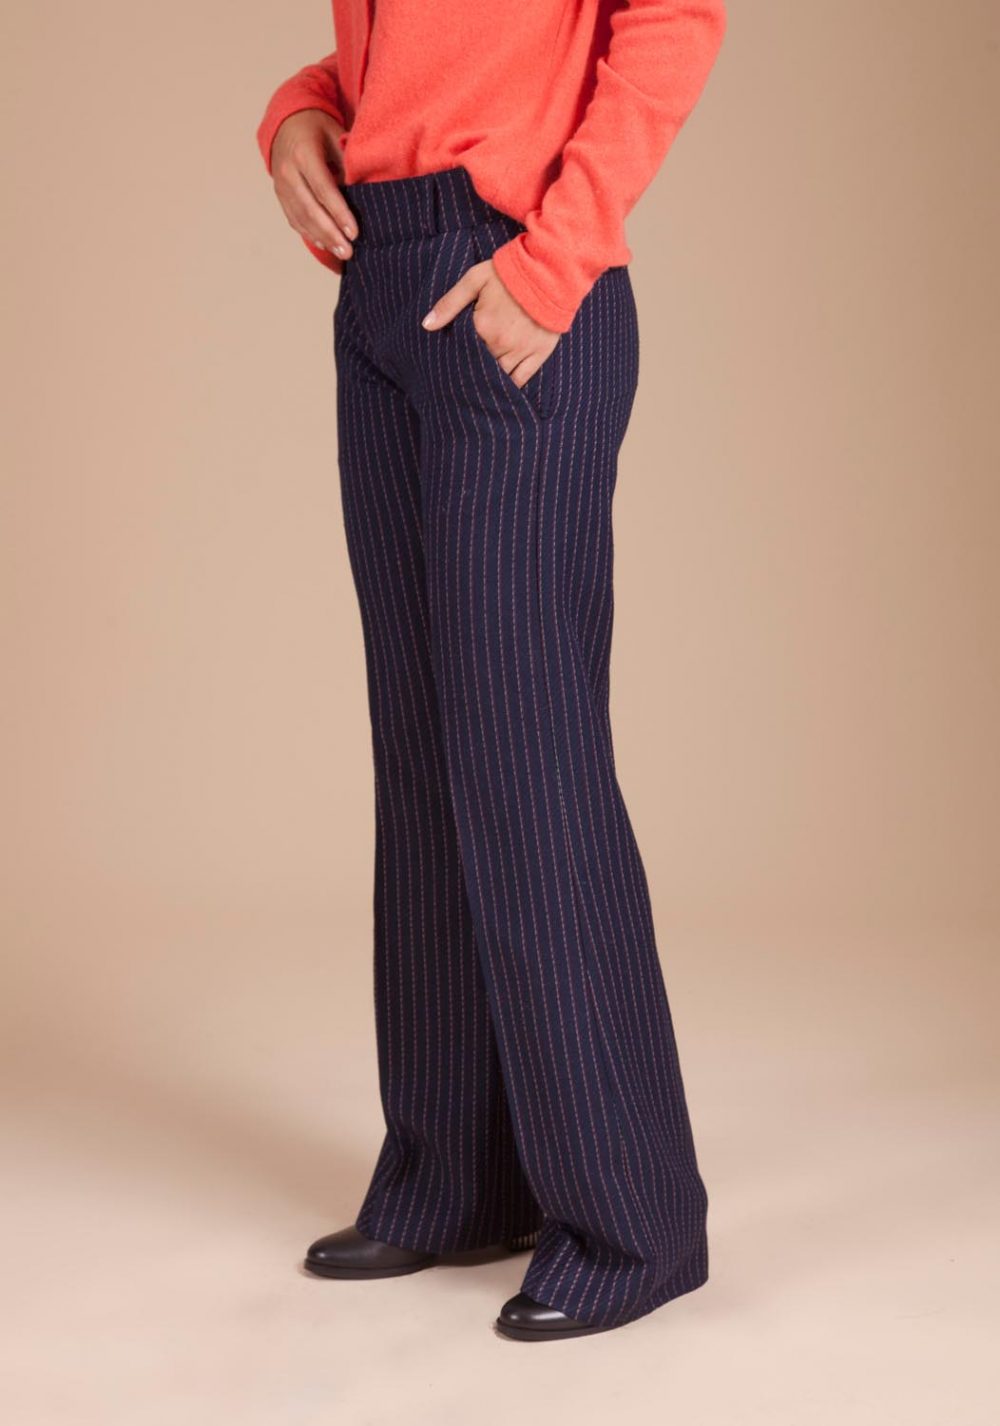 pantalon très tendance avec sa jolie couleur et ses fines rayures